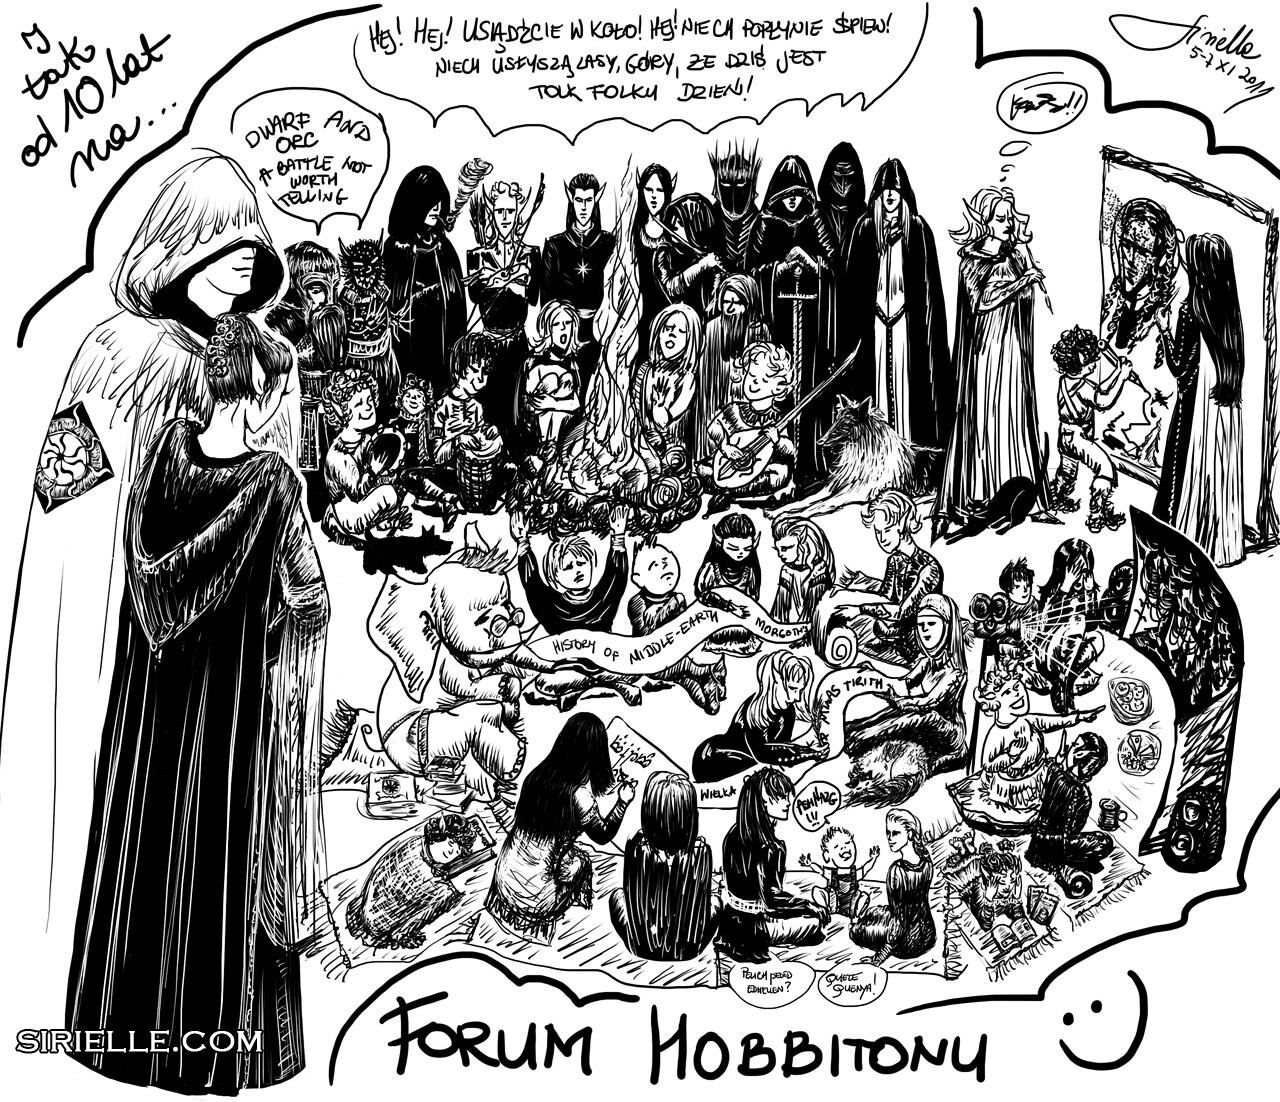 10th Anniversary of Hobbiton Forum (2011)